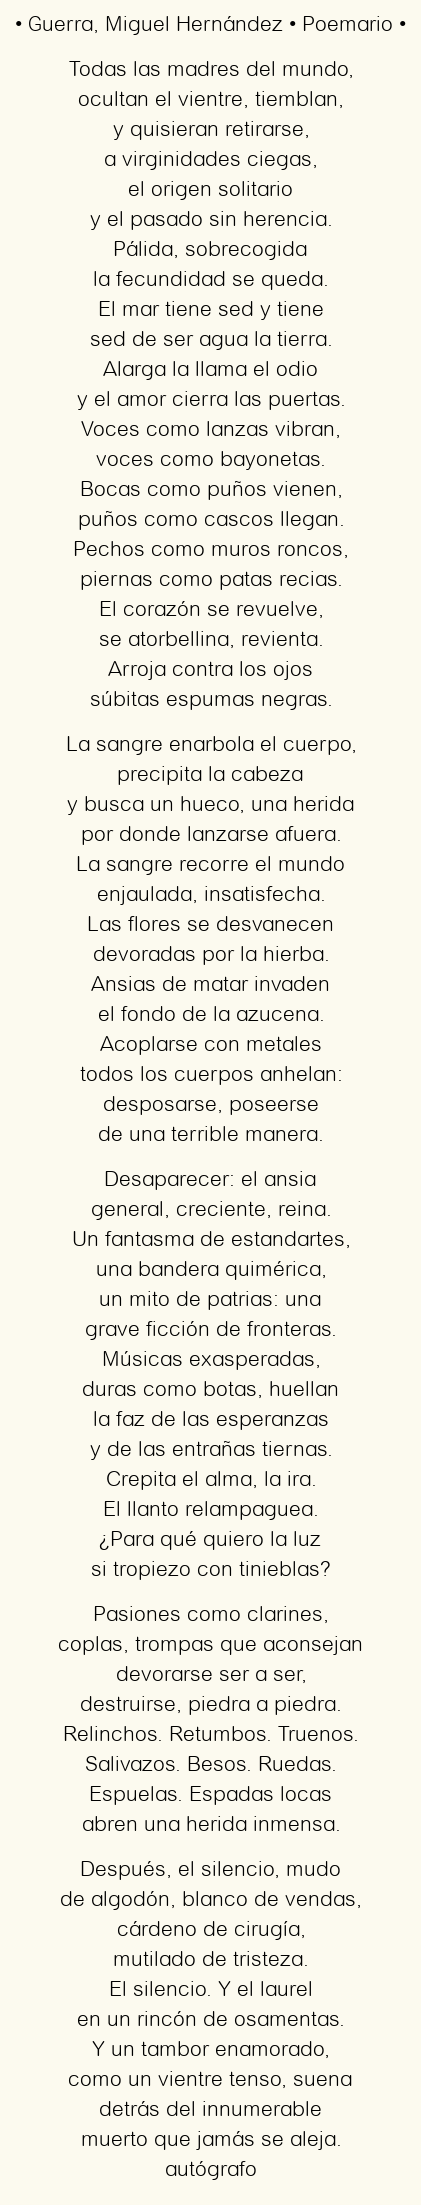 Imagen con el poema Guerra, por Miguel Hernández